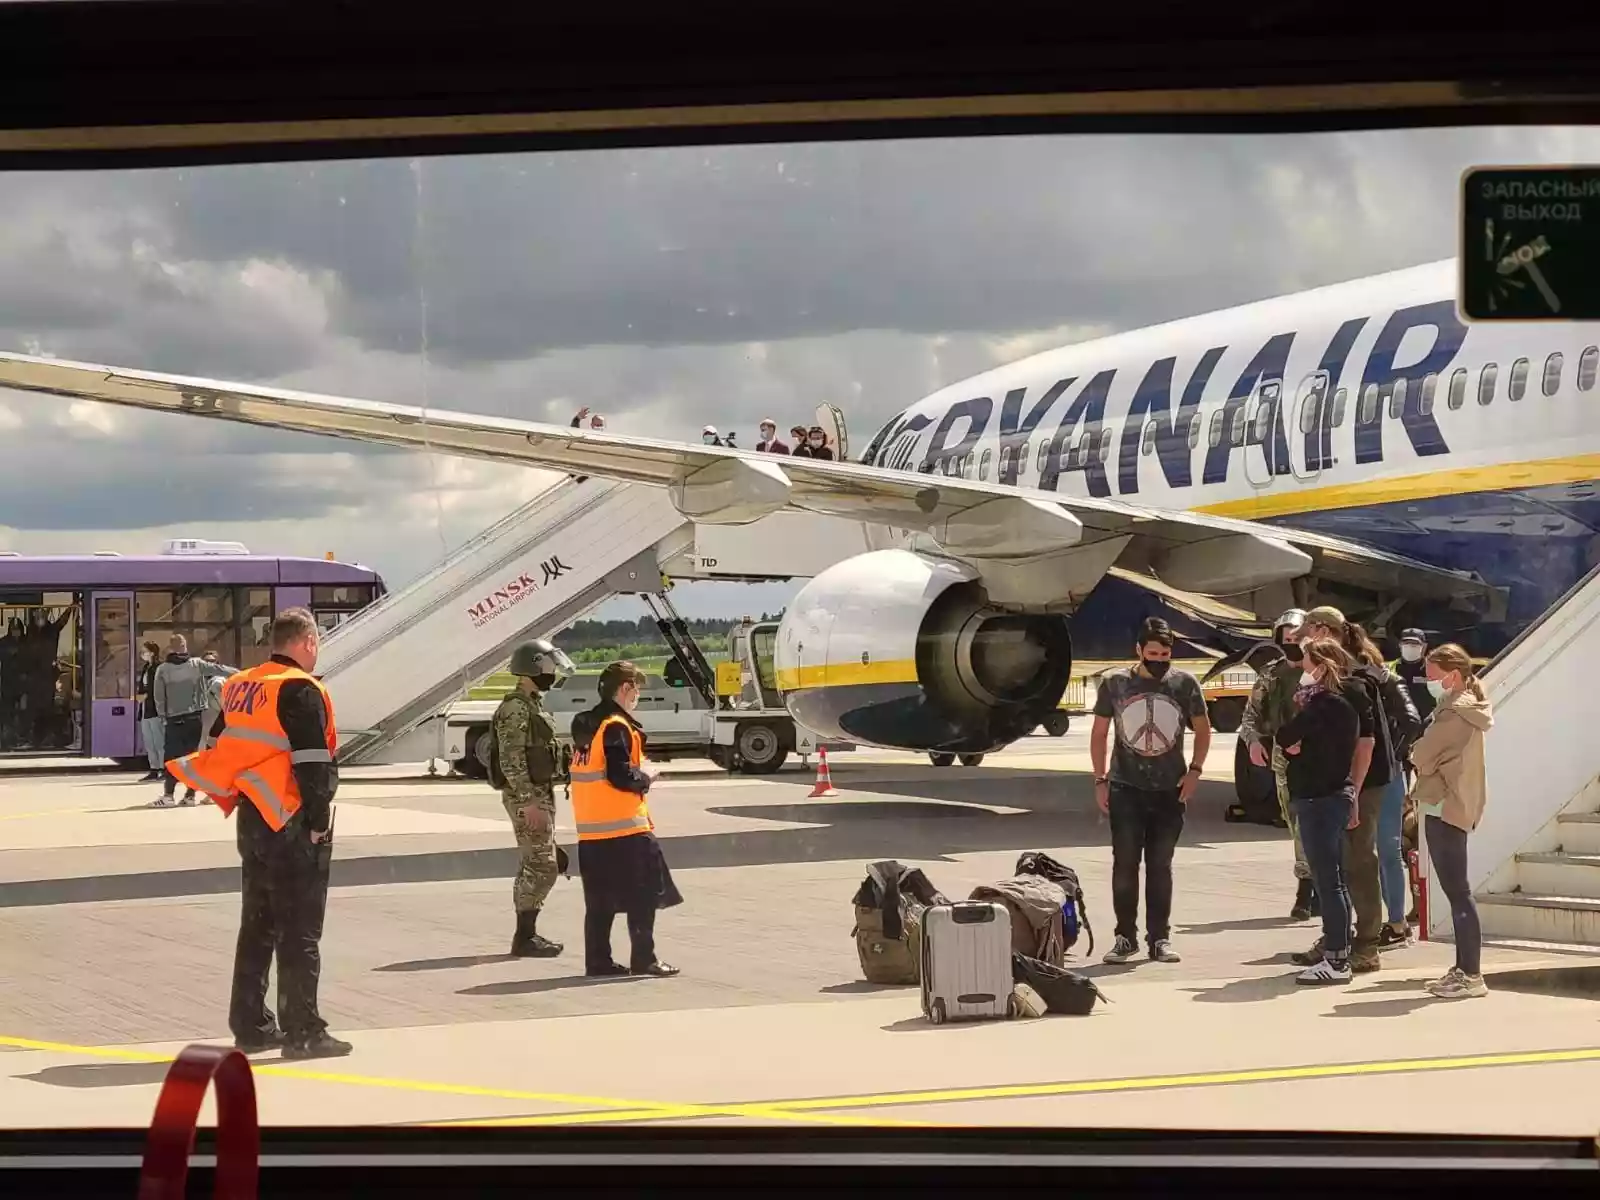 Польща опублікувала запис розмови мінського диспетчера та пілота літака Ryanair: третя особа давала вказівки (ВІДЕО)